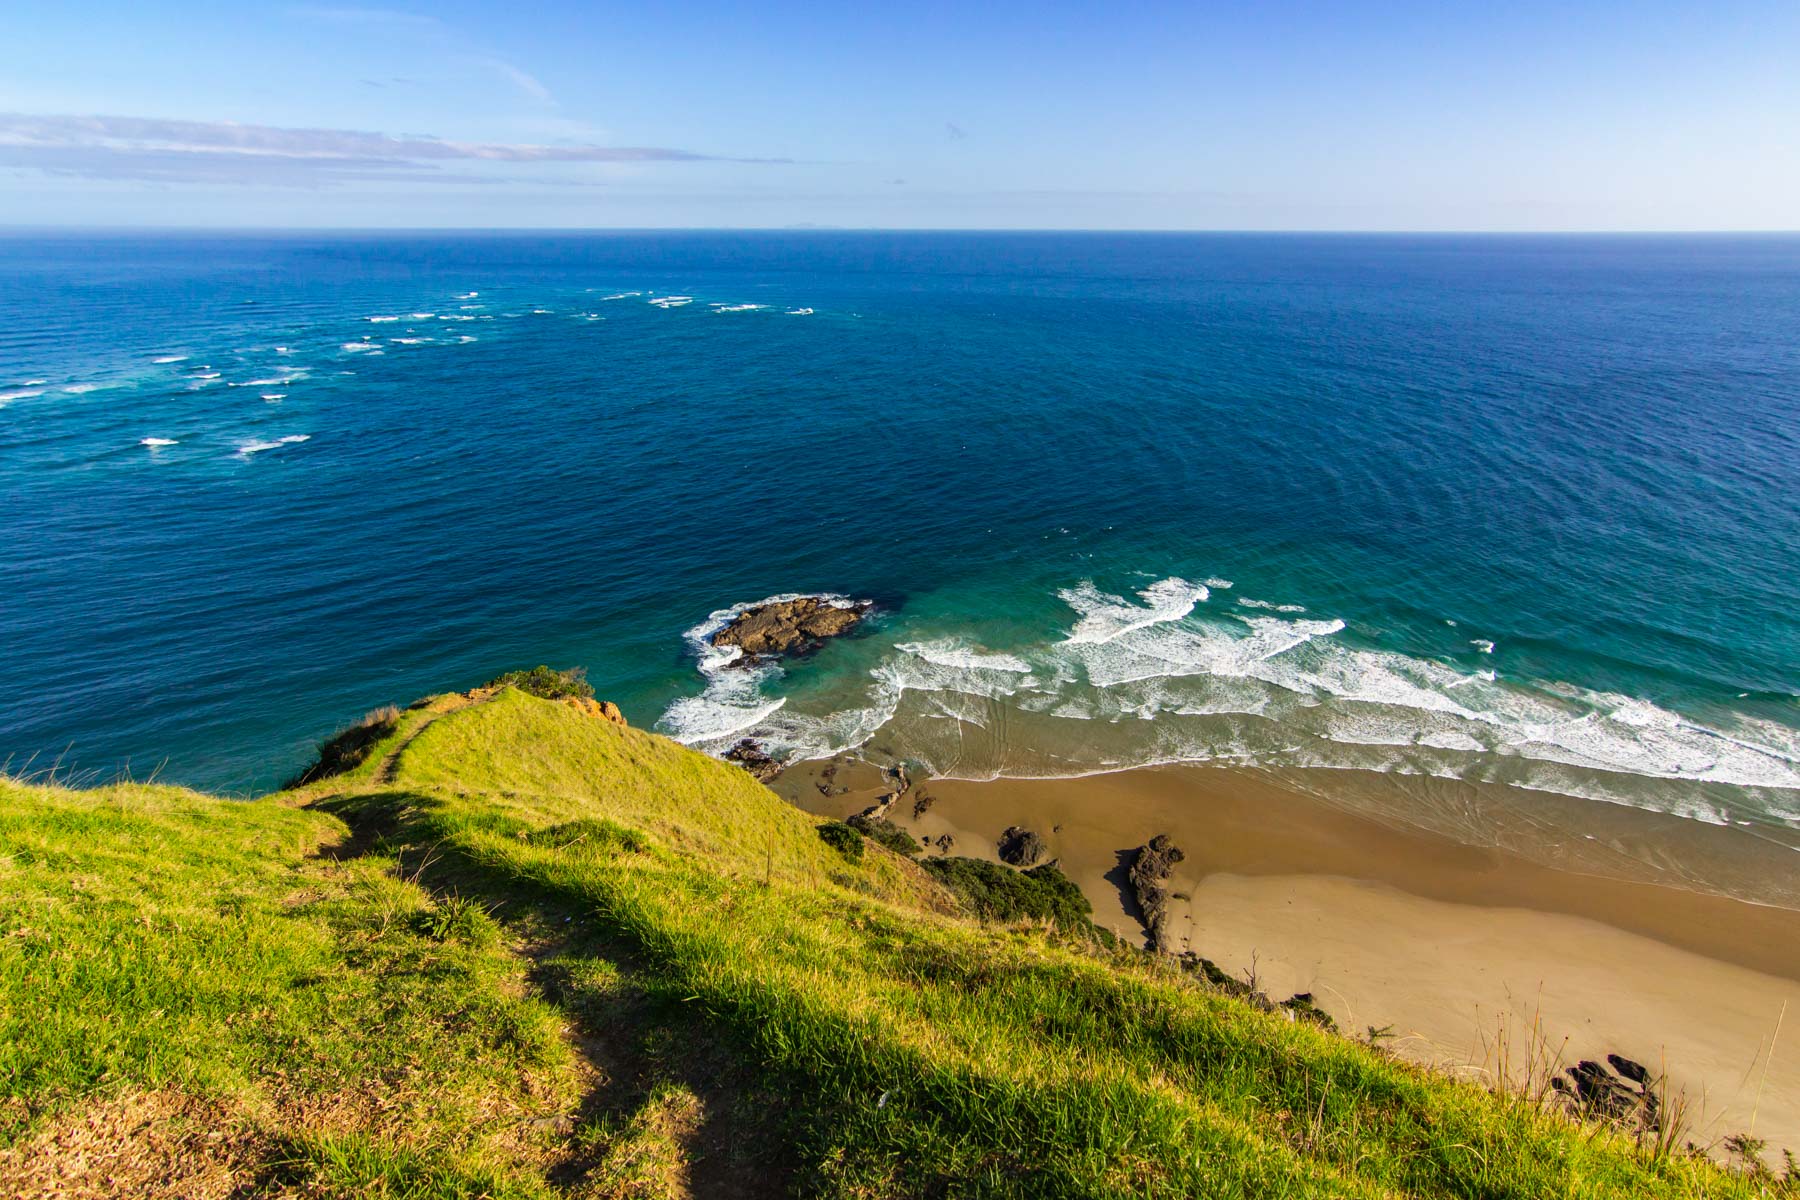 La pointe du Cap Reinga, une colline verdoyante, descend vers une petite plage de sable. Devant nous, la mer de Tasman à gauche rejoint l’océan Pacifique à droite.